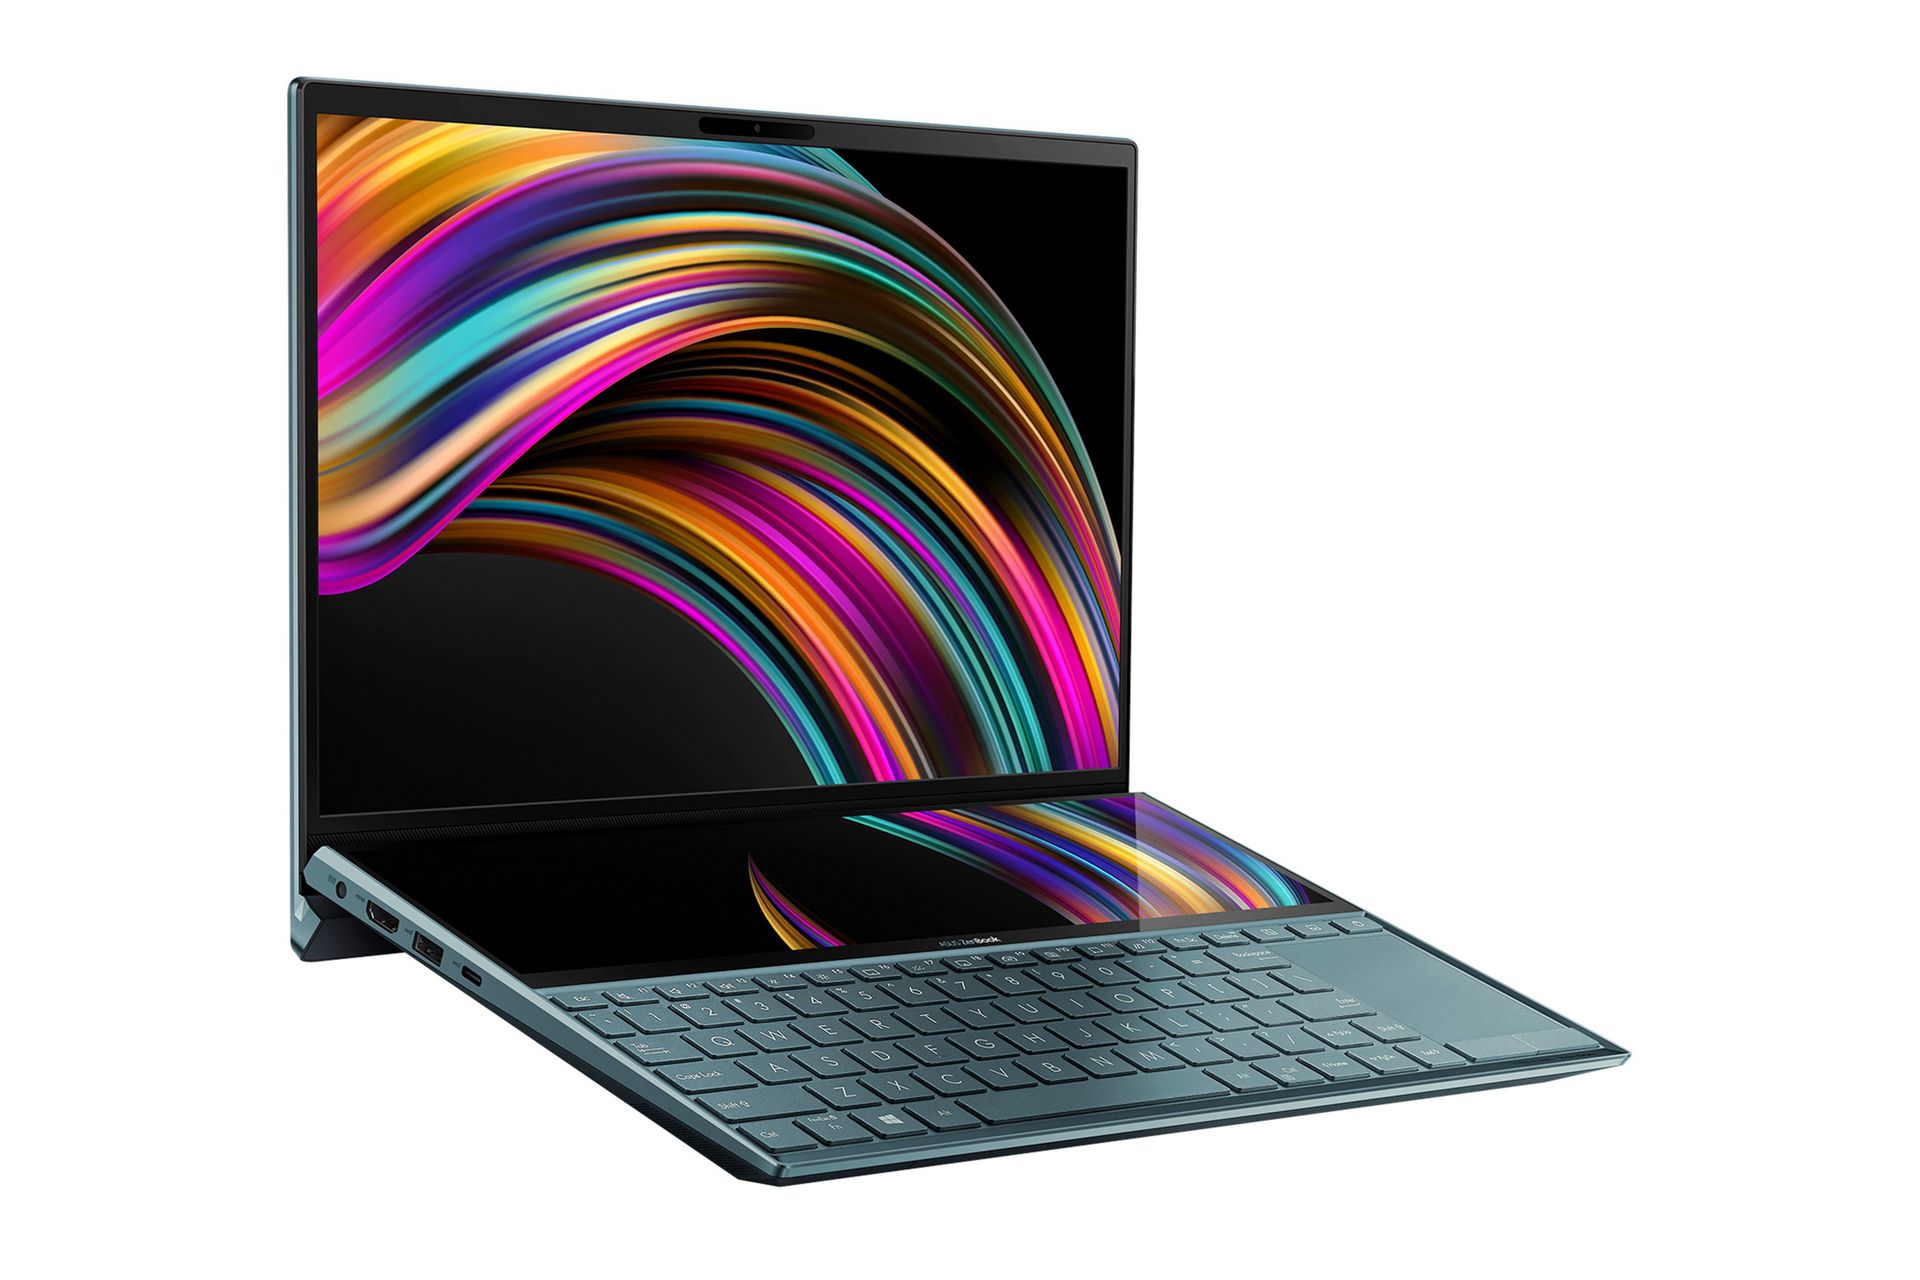 ZenBook Duo 14 cũng được trang bị công nghệ ASUS Intelligent Performance